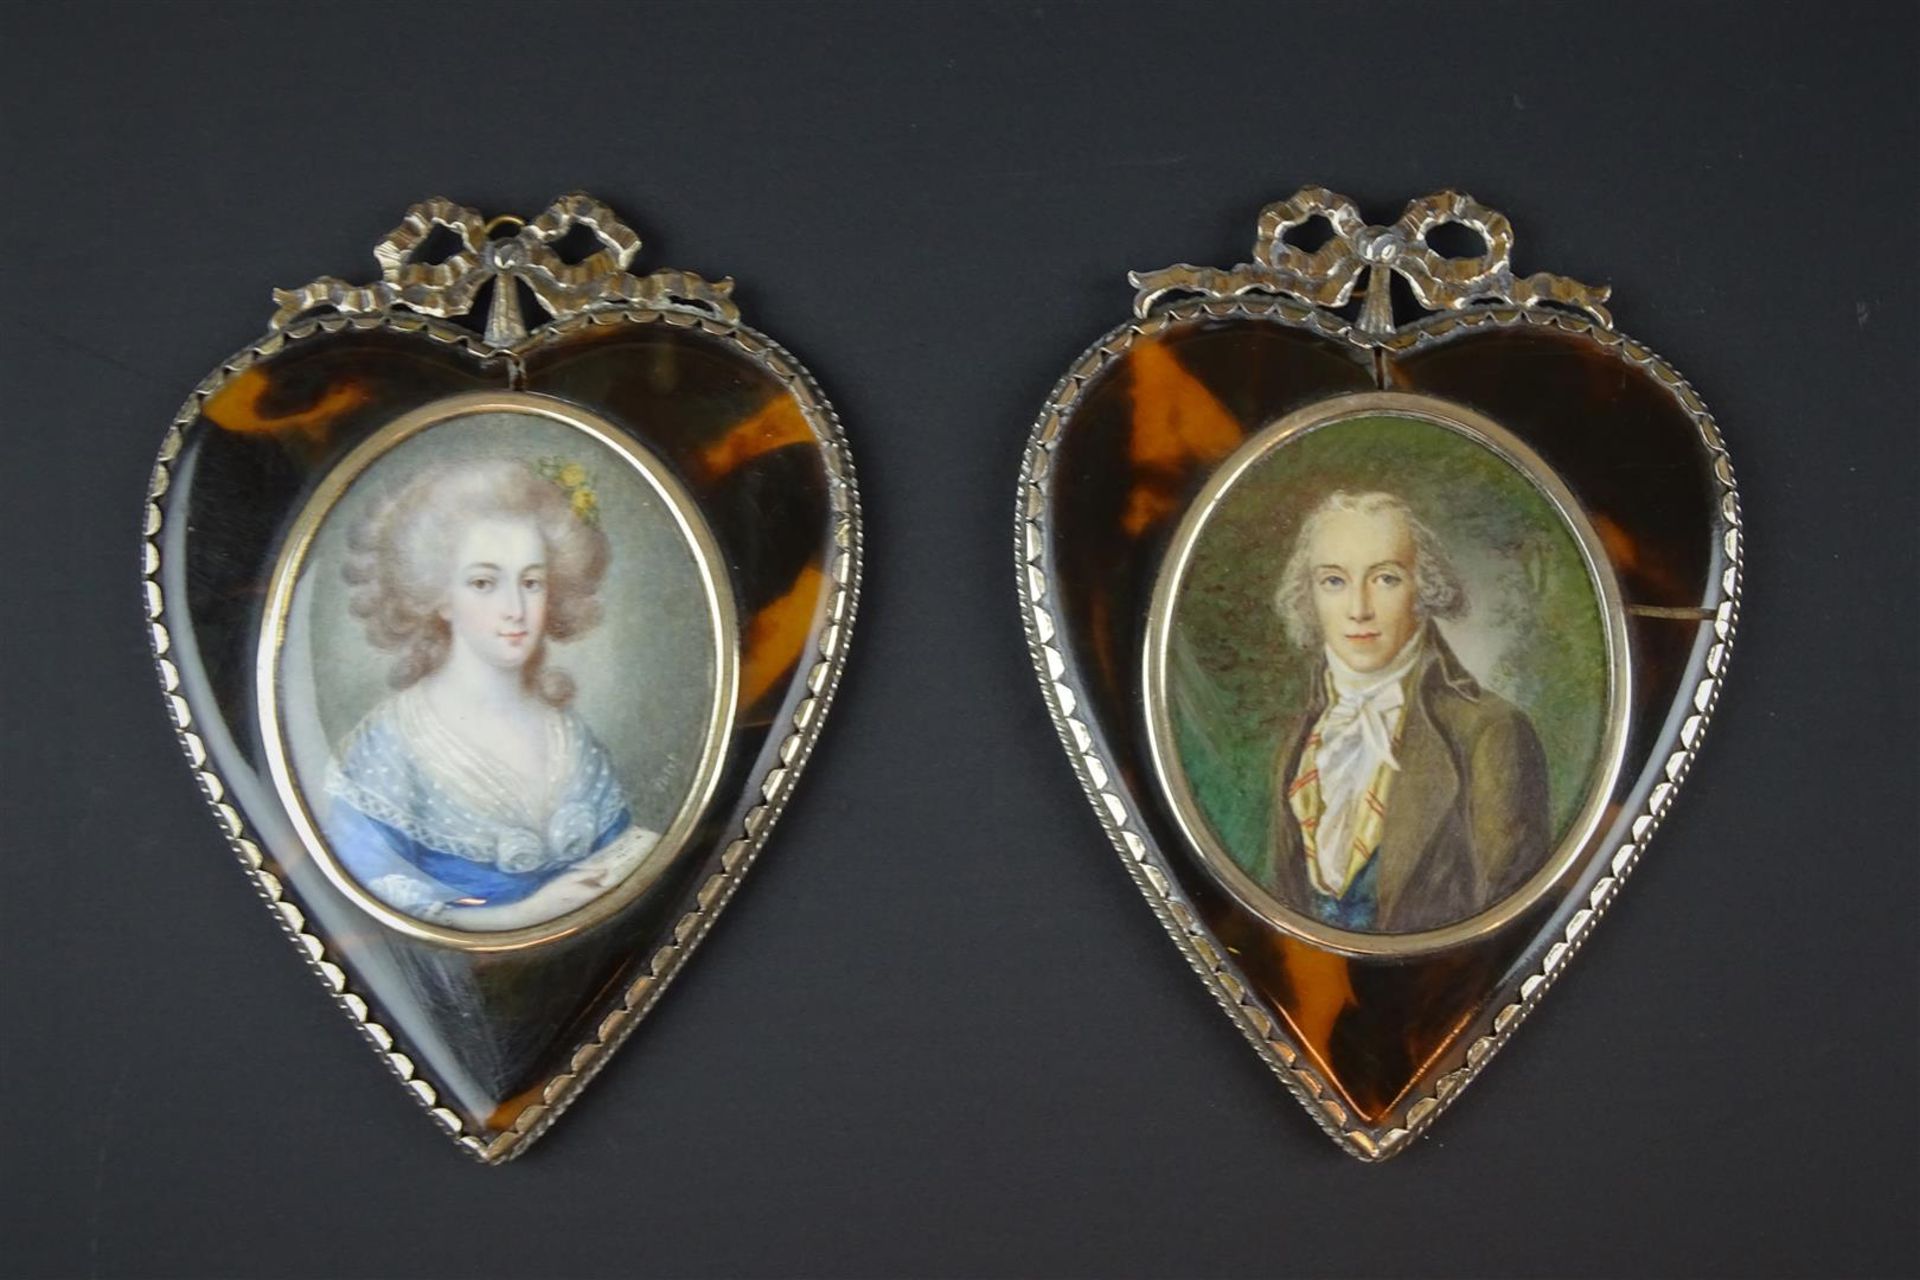 2 portretminiaturen met voorstelling van dame en heer, voorzien van hartvormig zilveren en schildpad